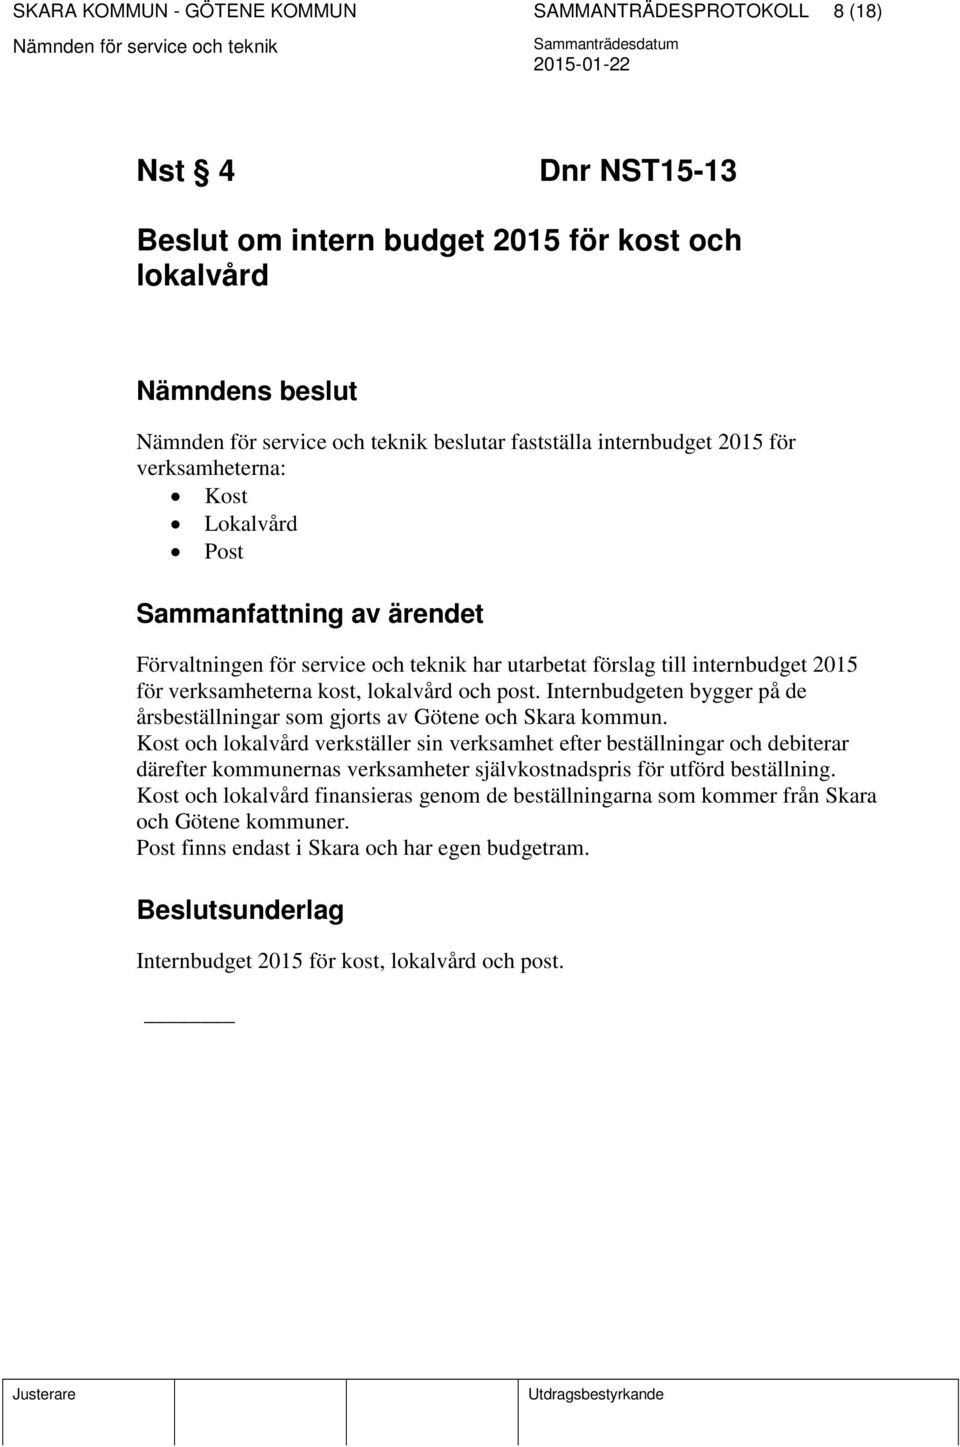 Internbudgeten bygger på de årsbeställningar som gjorts av Götene och Skara kommun.